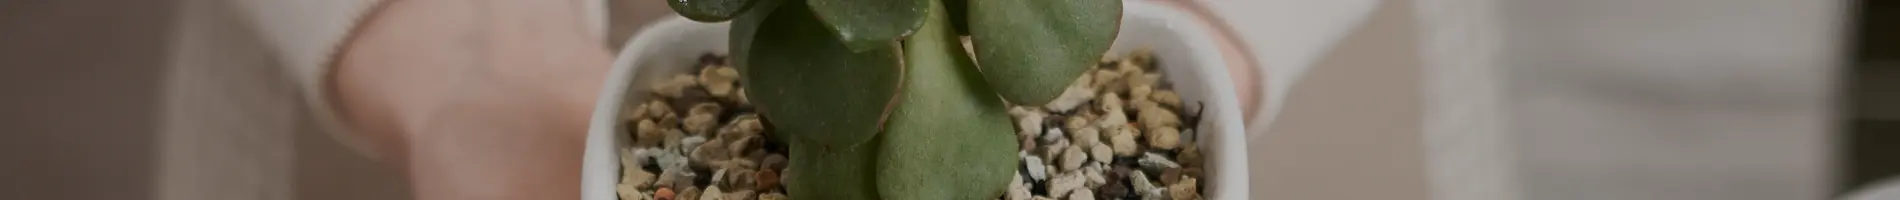 Mini Cactus y Crasas en Maceta de Tronco de Madera